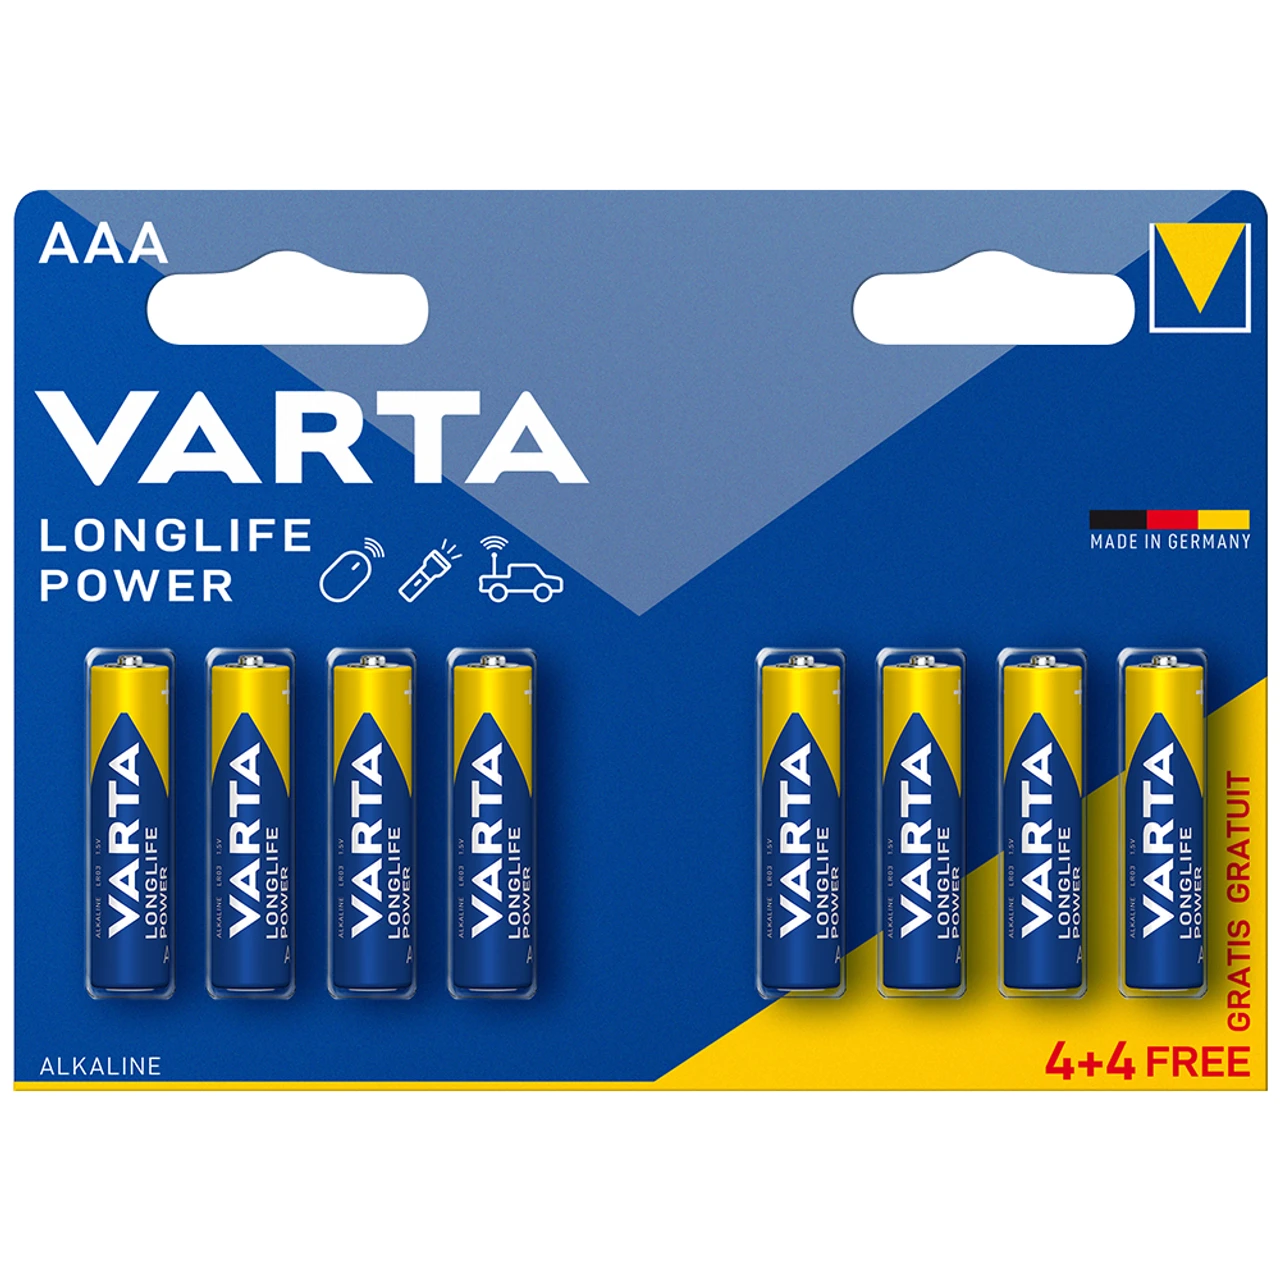 Батарейка Varta Longlife Power Alkaline LR03 (AAA), лужна, 8шт., 16.5грн/шт.